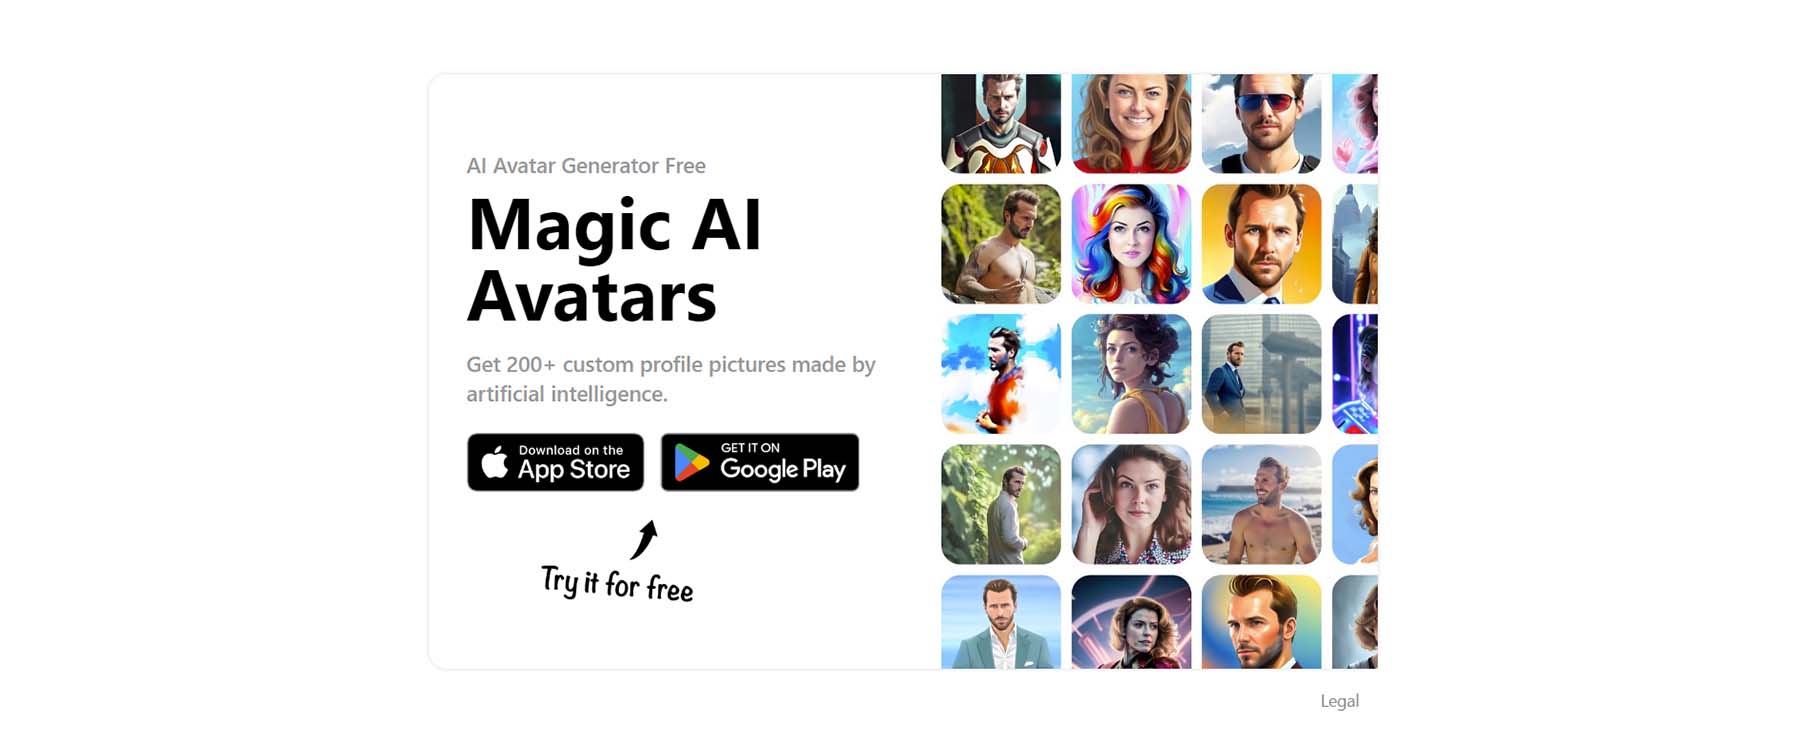 Magic AI Avatars, AI generator